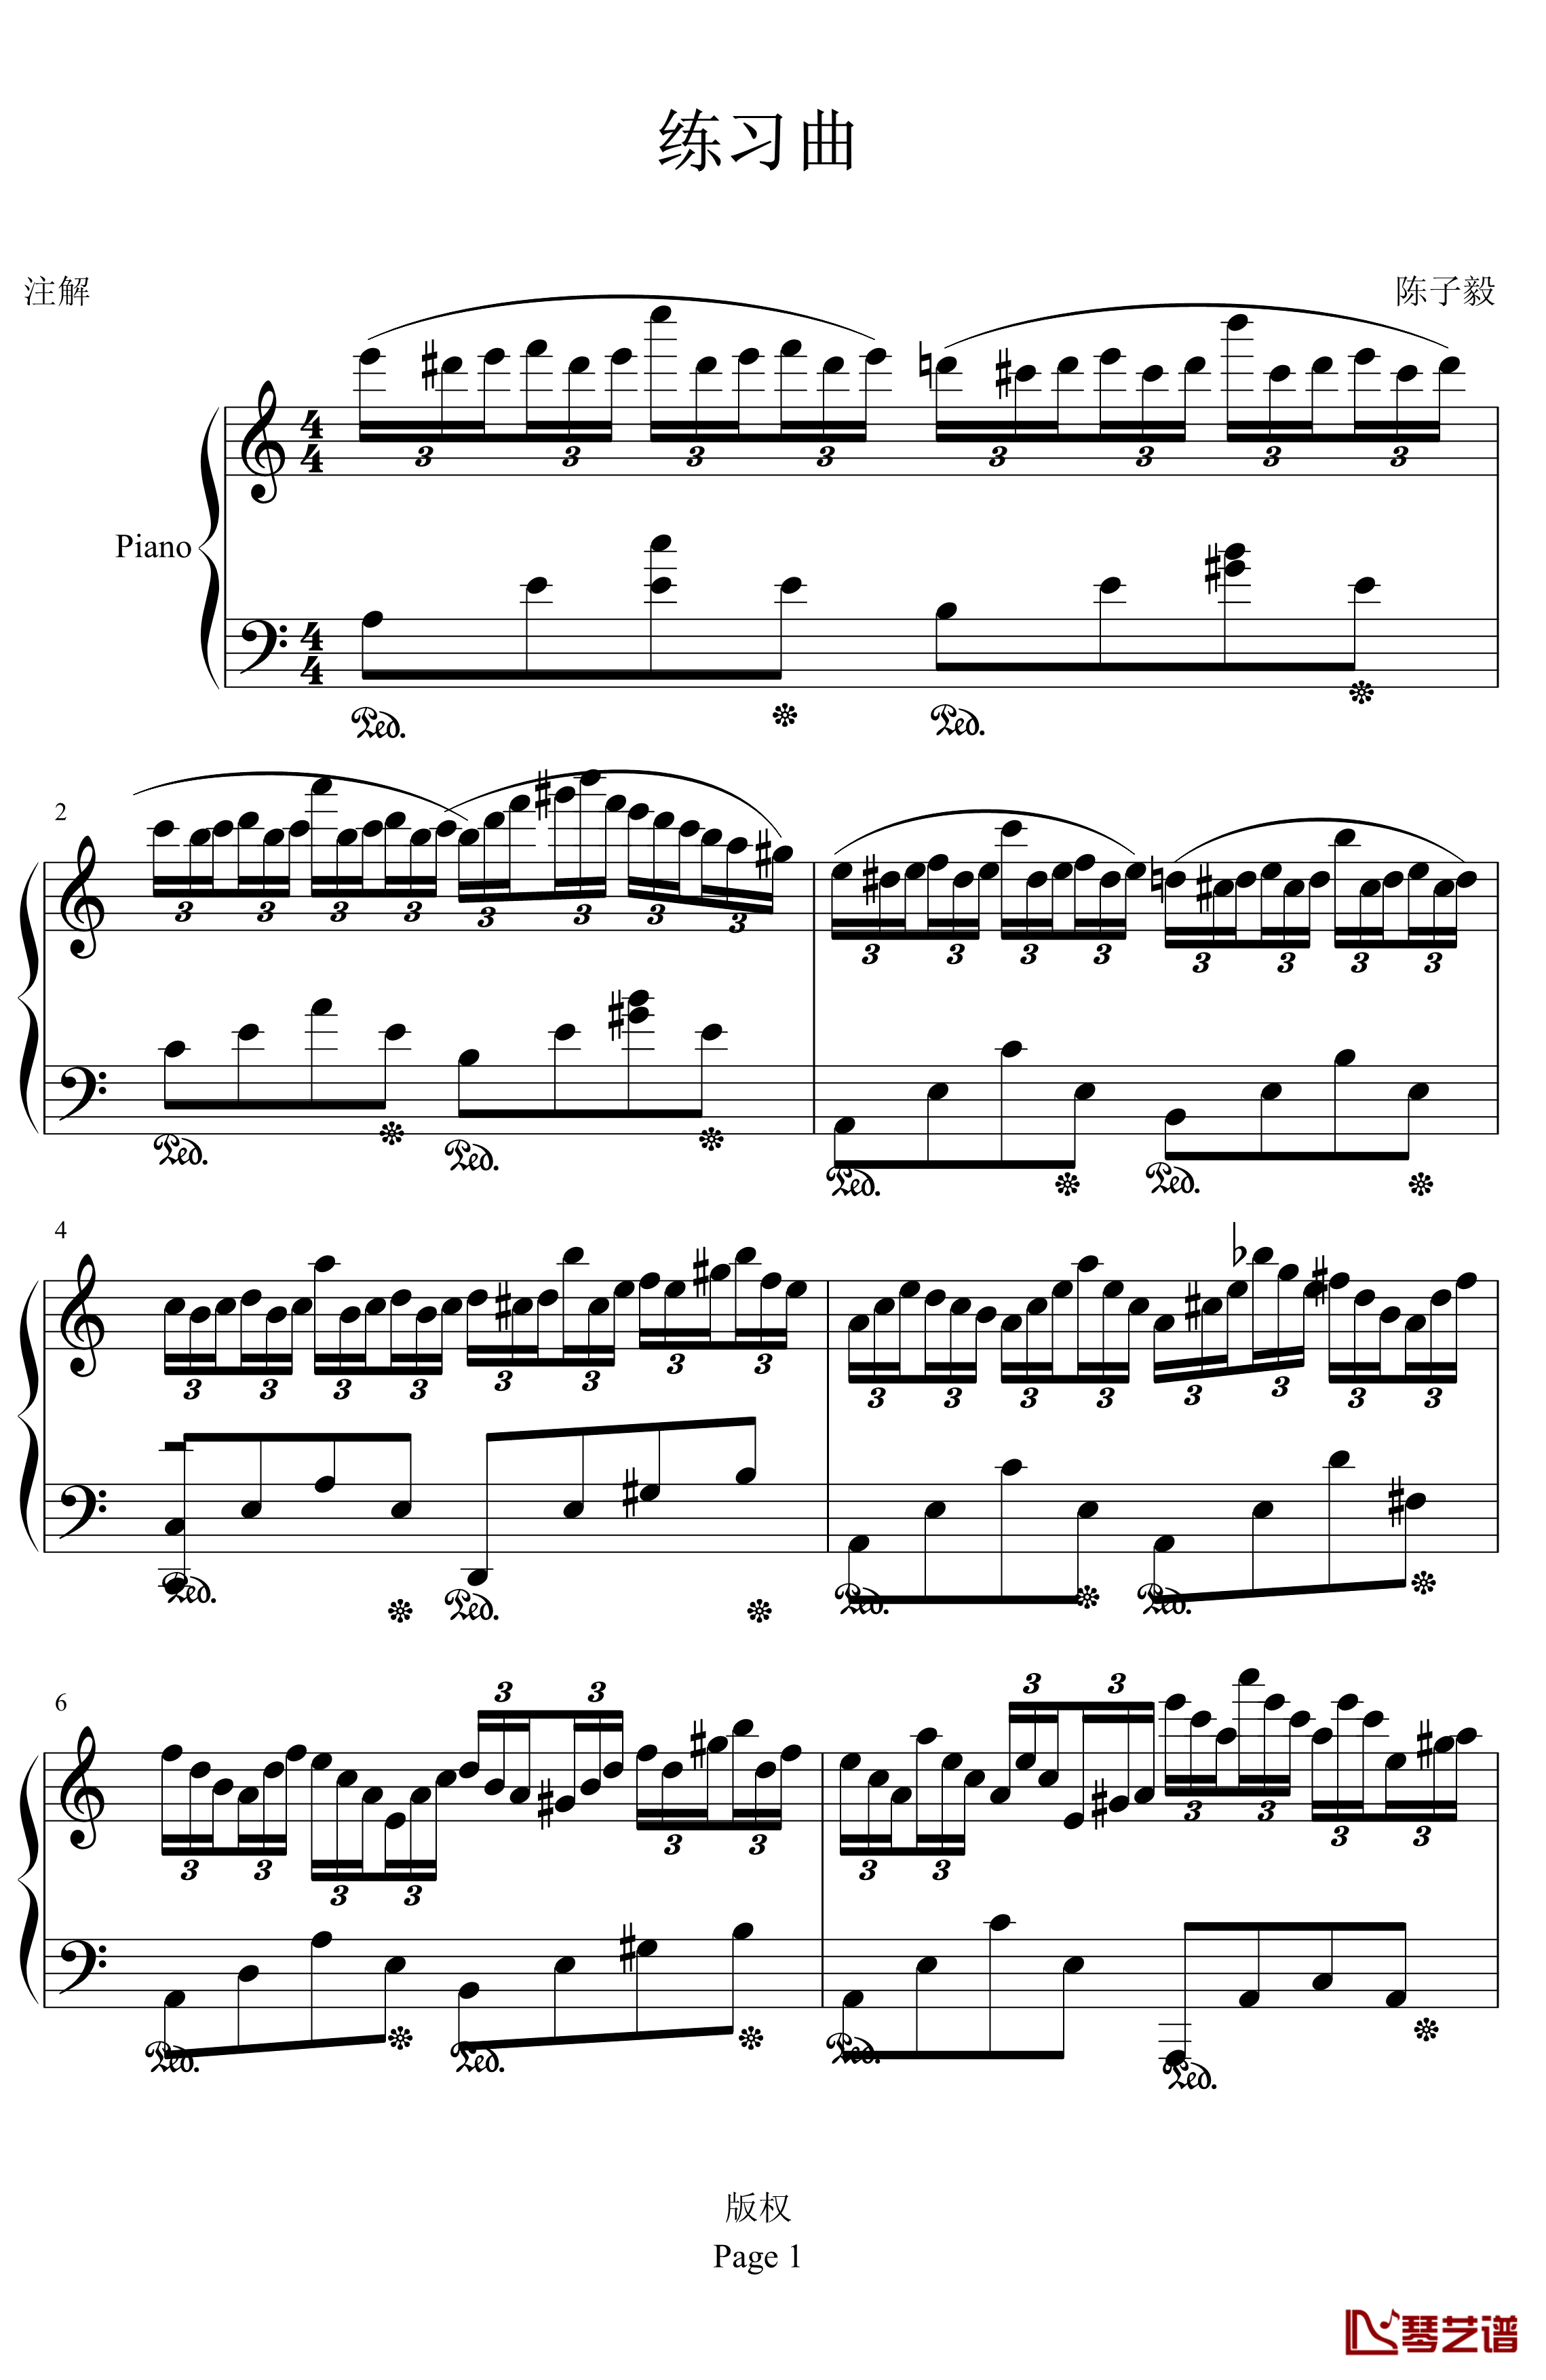 练习曲钢琴谱-peipei61112011